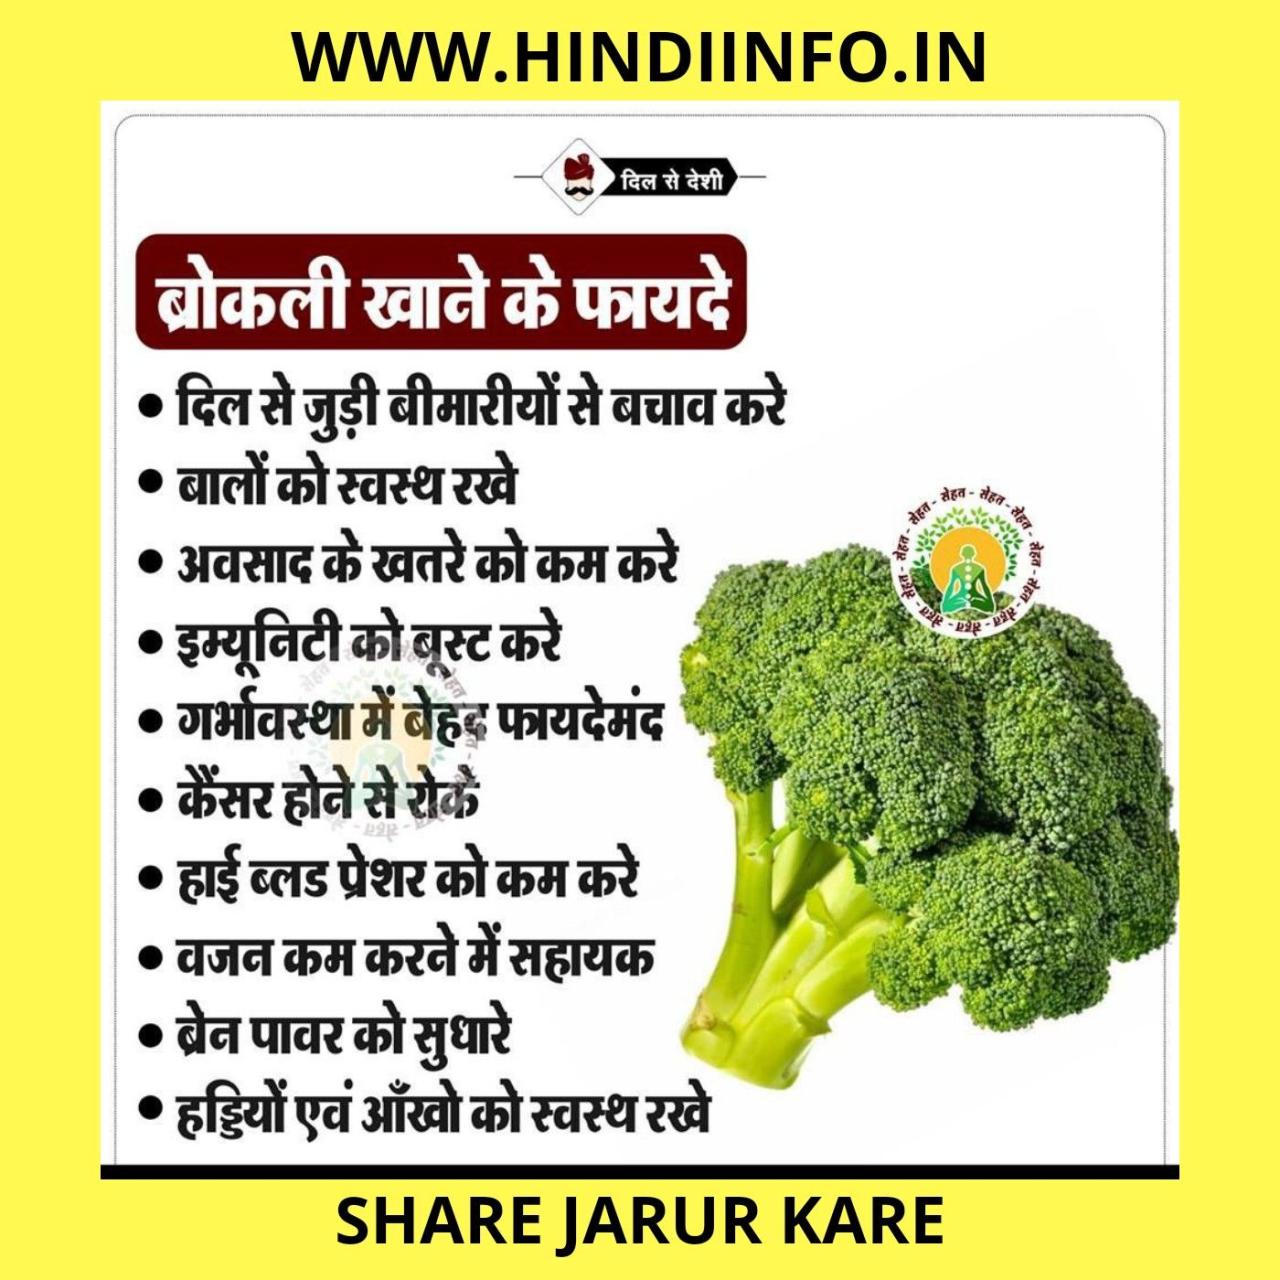 Manfaat qusthul hindi untuk kesehatan